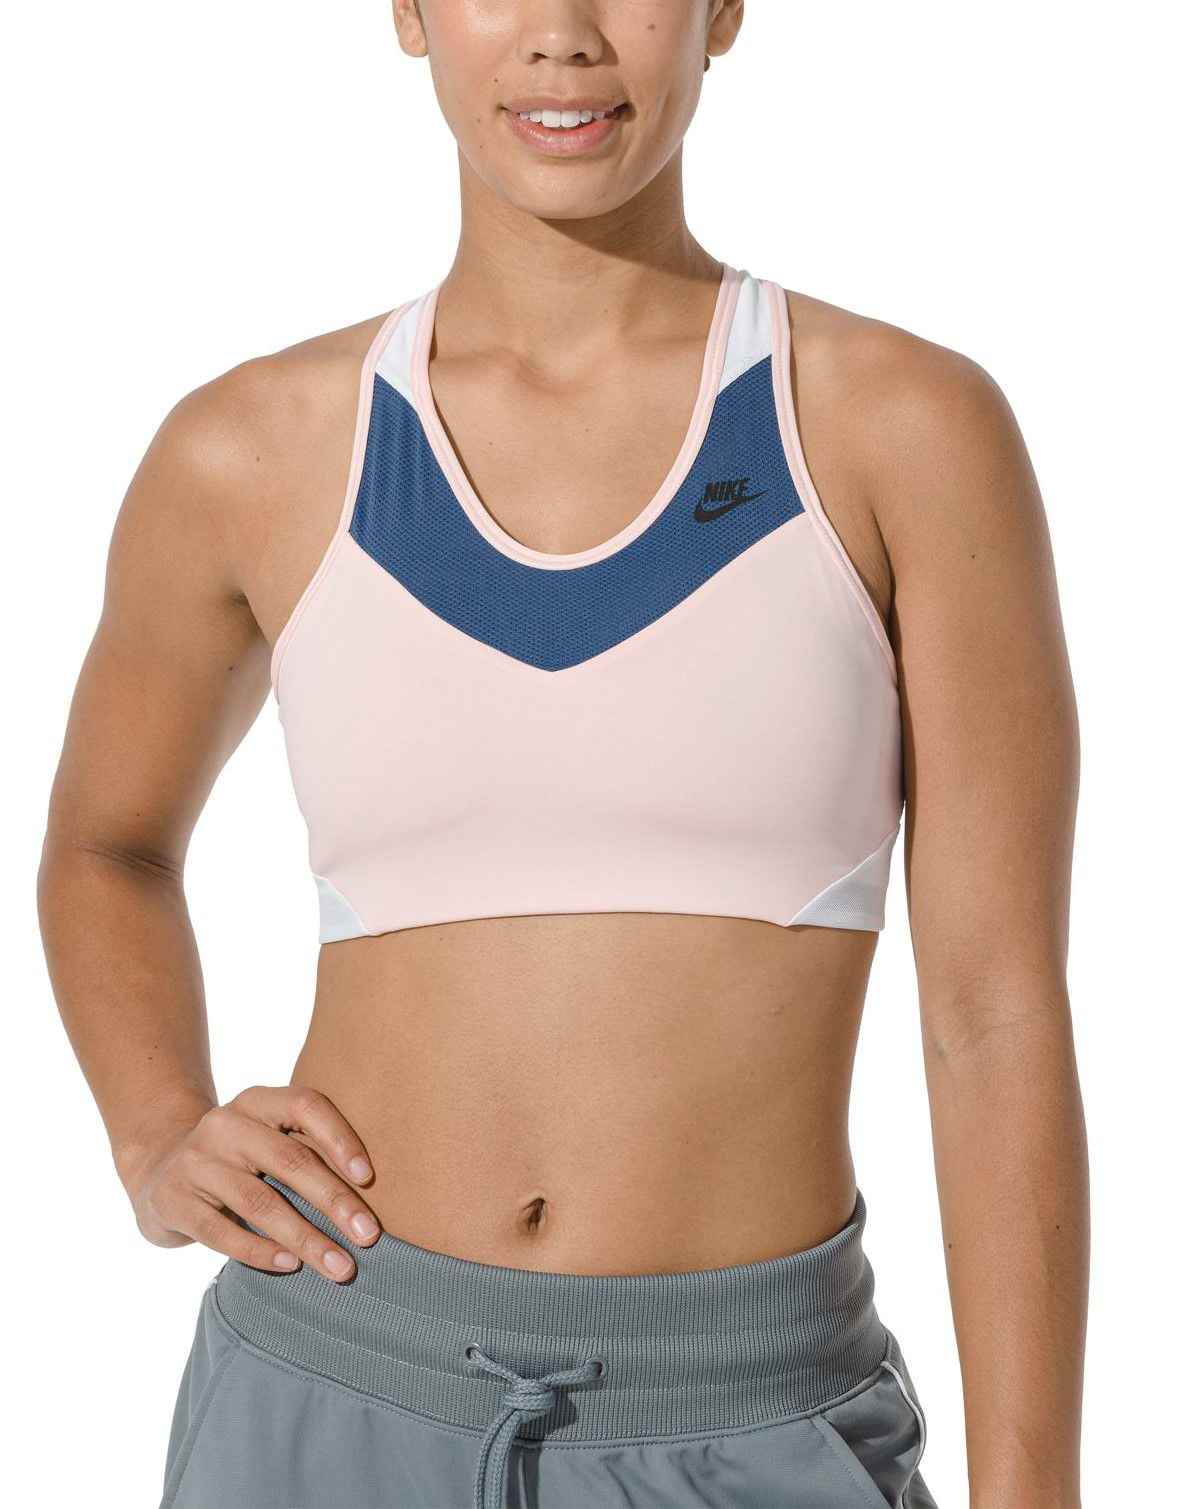 nike women's windrunner medium support sports bra